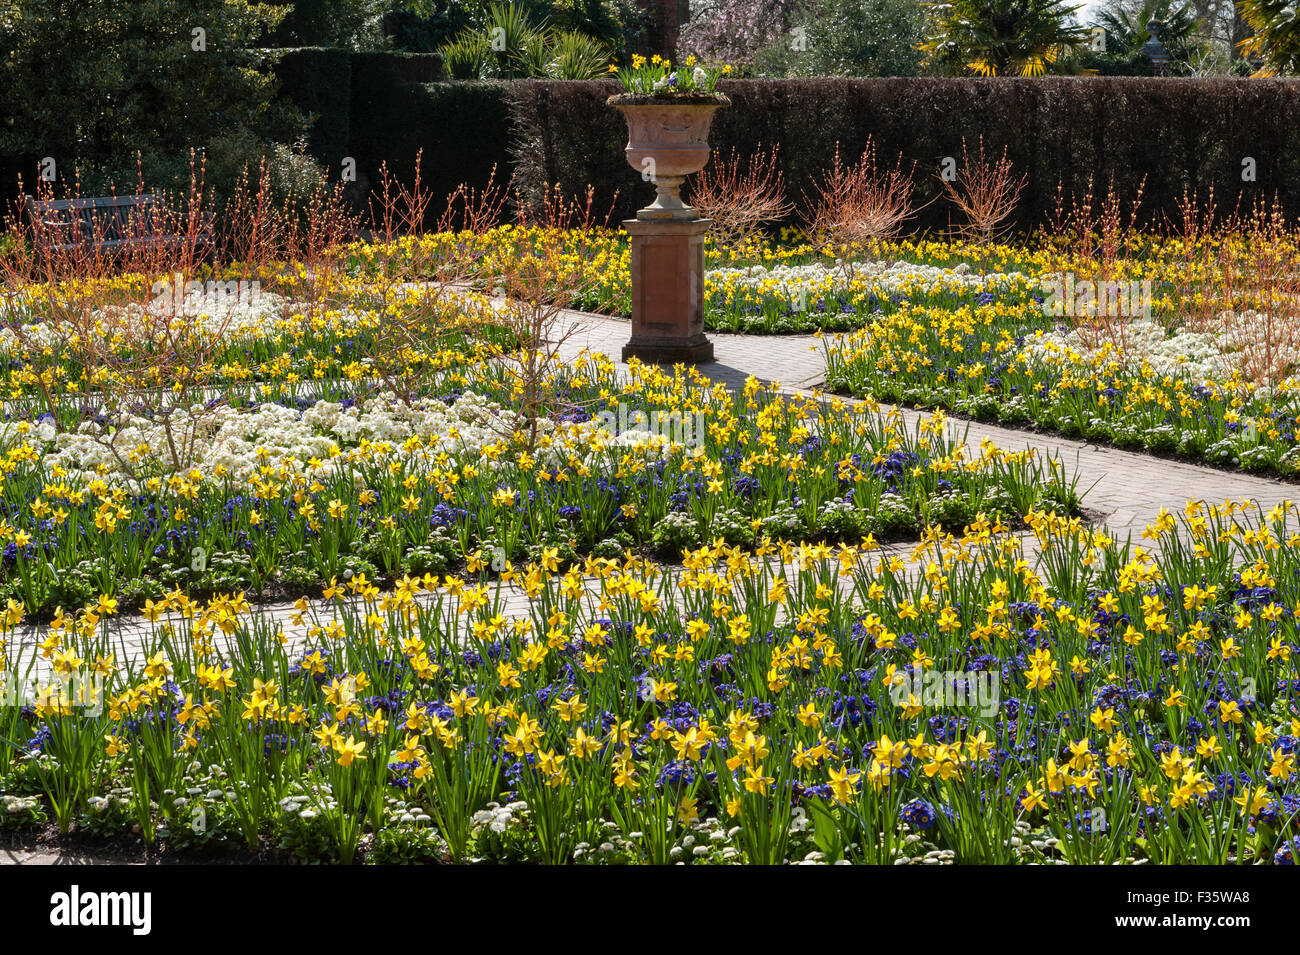 Die Royal Horticultural Society (RHS) Gärten in Wisley, Surrey, UK. Narzissen und Hartriegel im Frühjahr Stockfoto